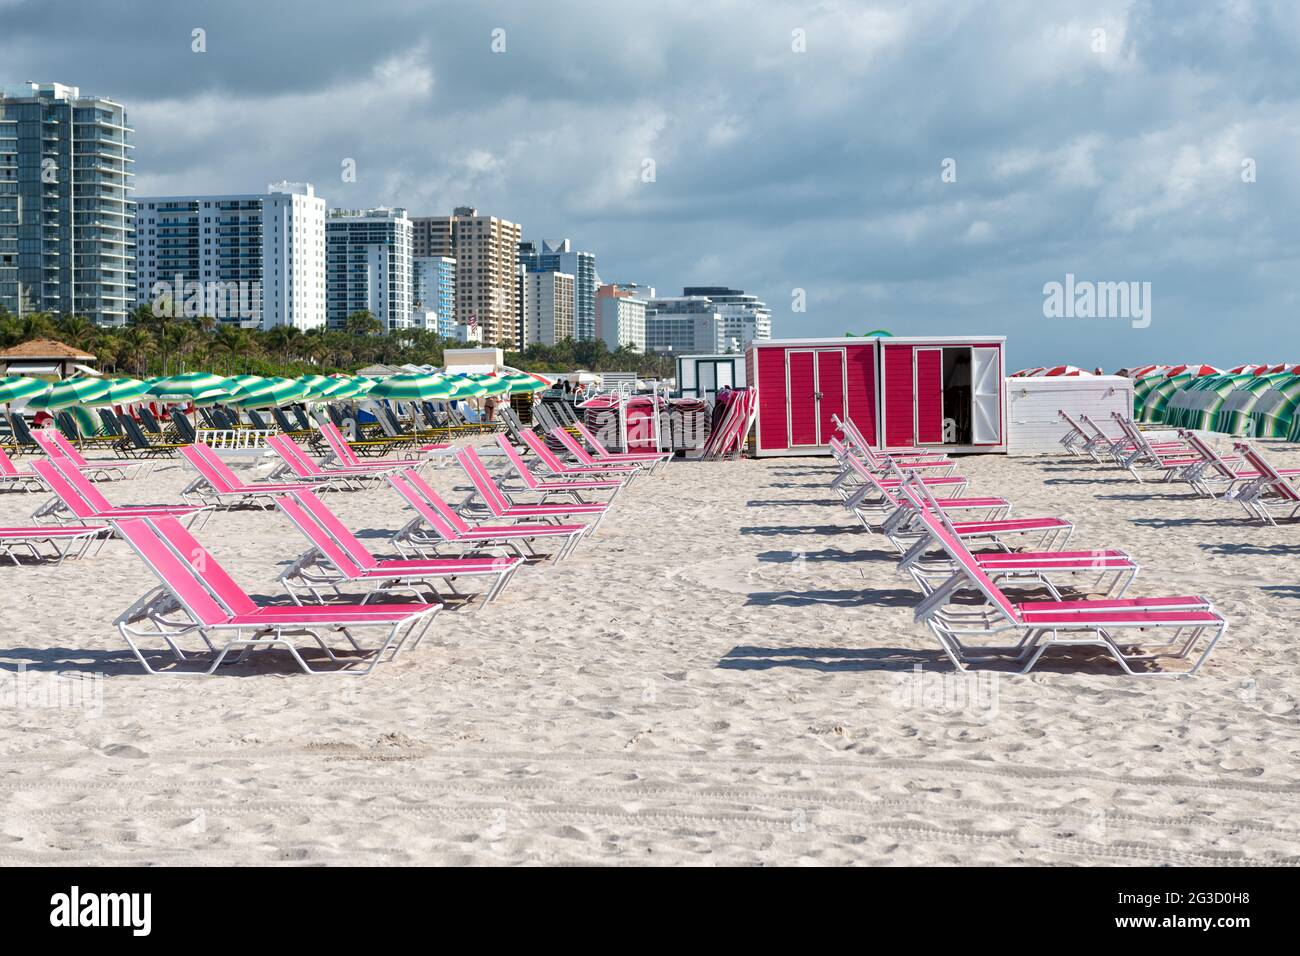 Chaises longues à Miami, États-Unis. Chaises longues roses sur la plage.  Meubles de plage. Vacances d'été Photo Stock - Alamy